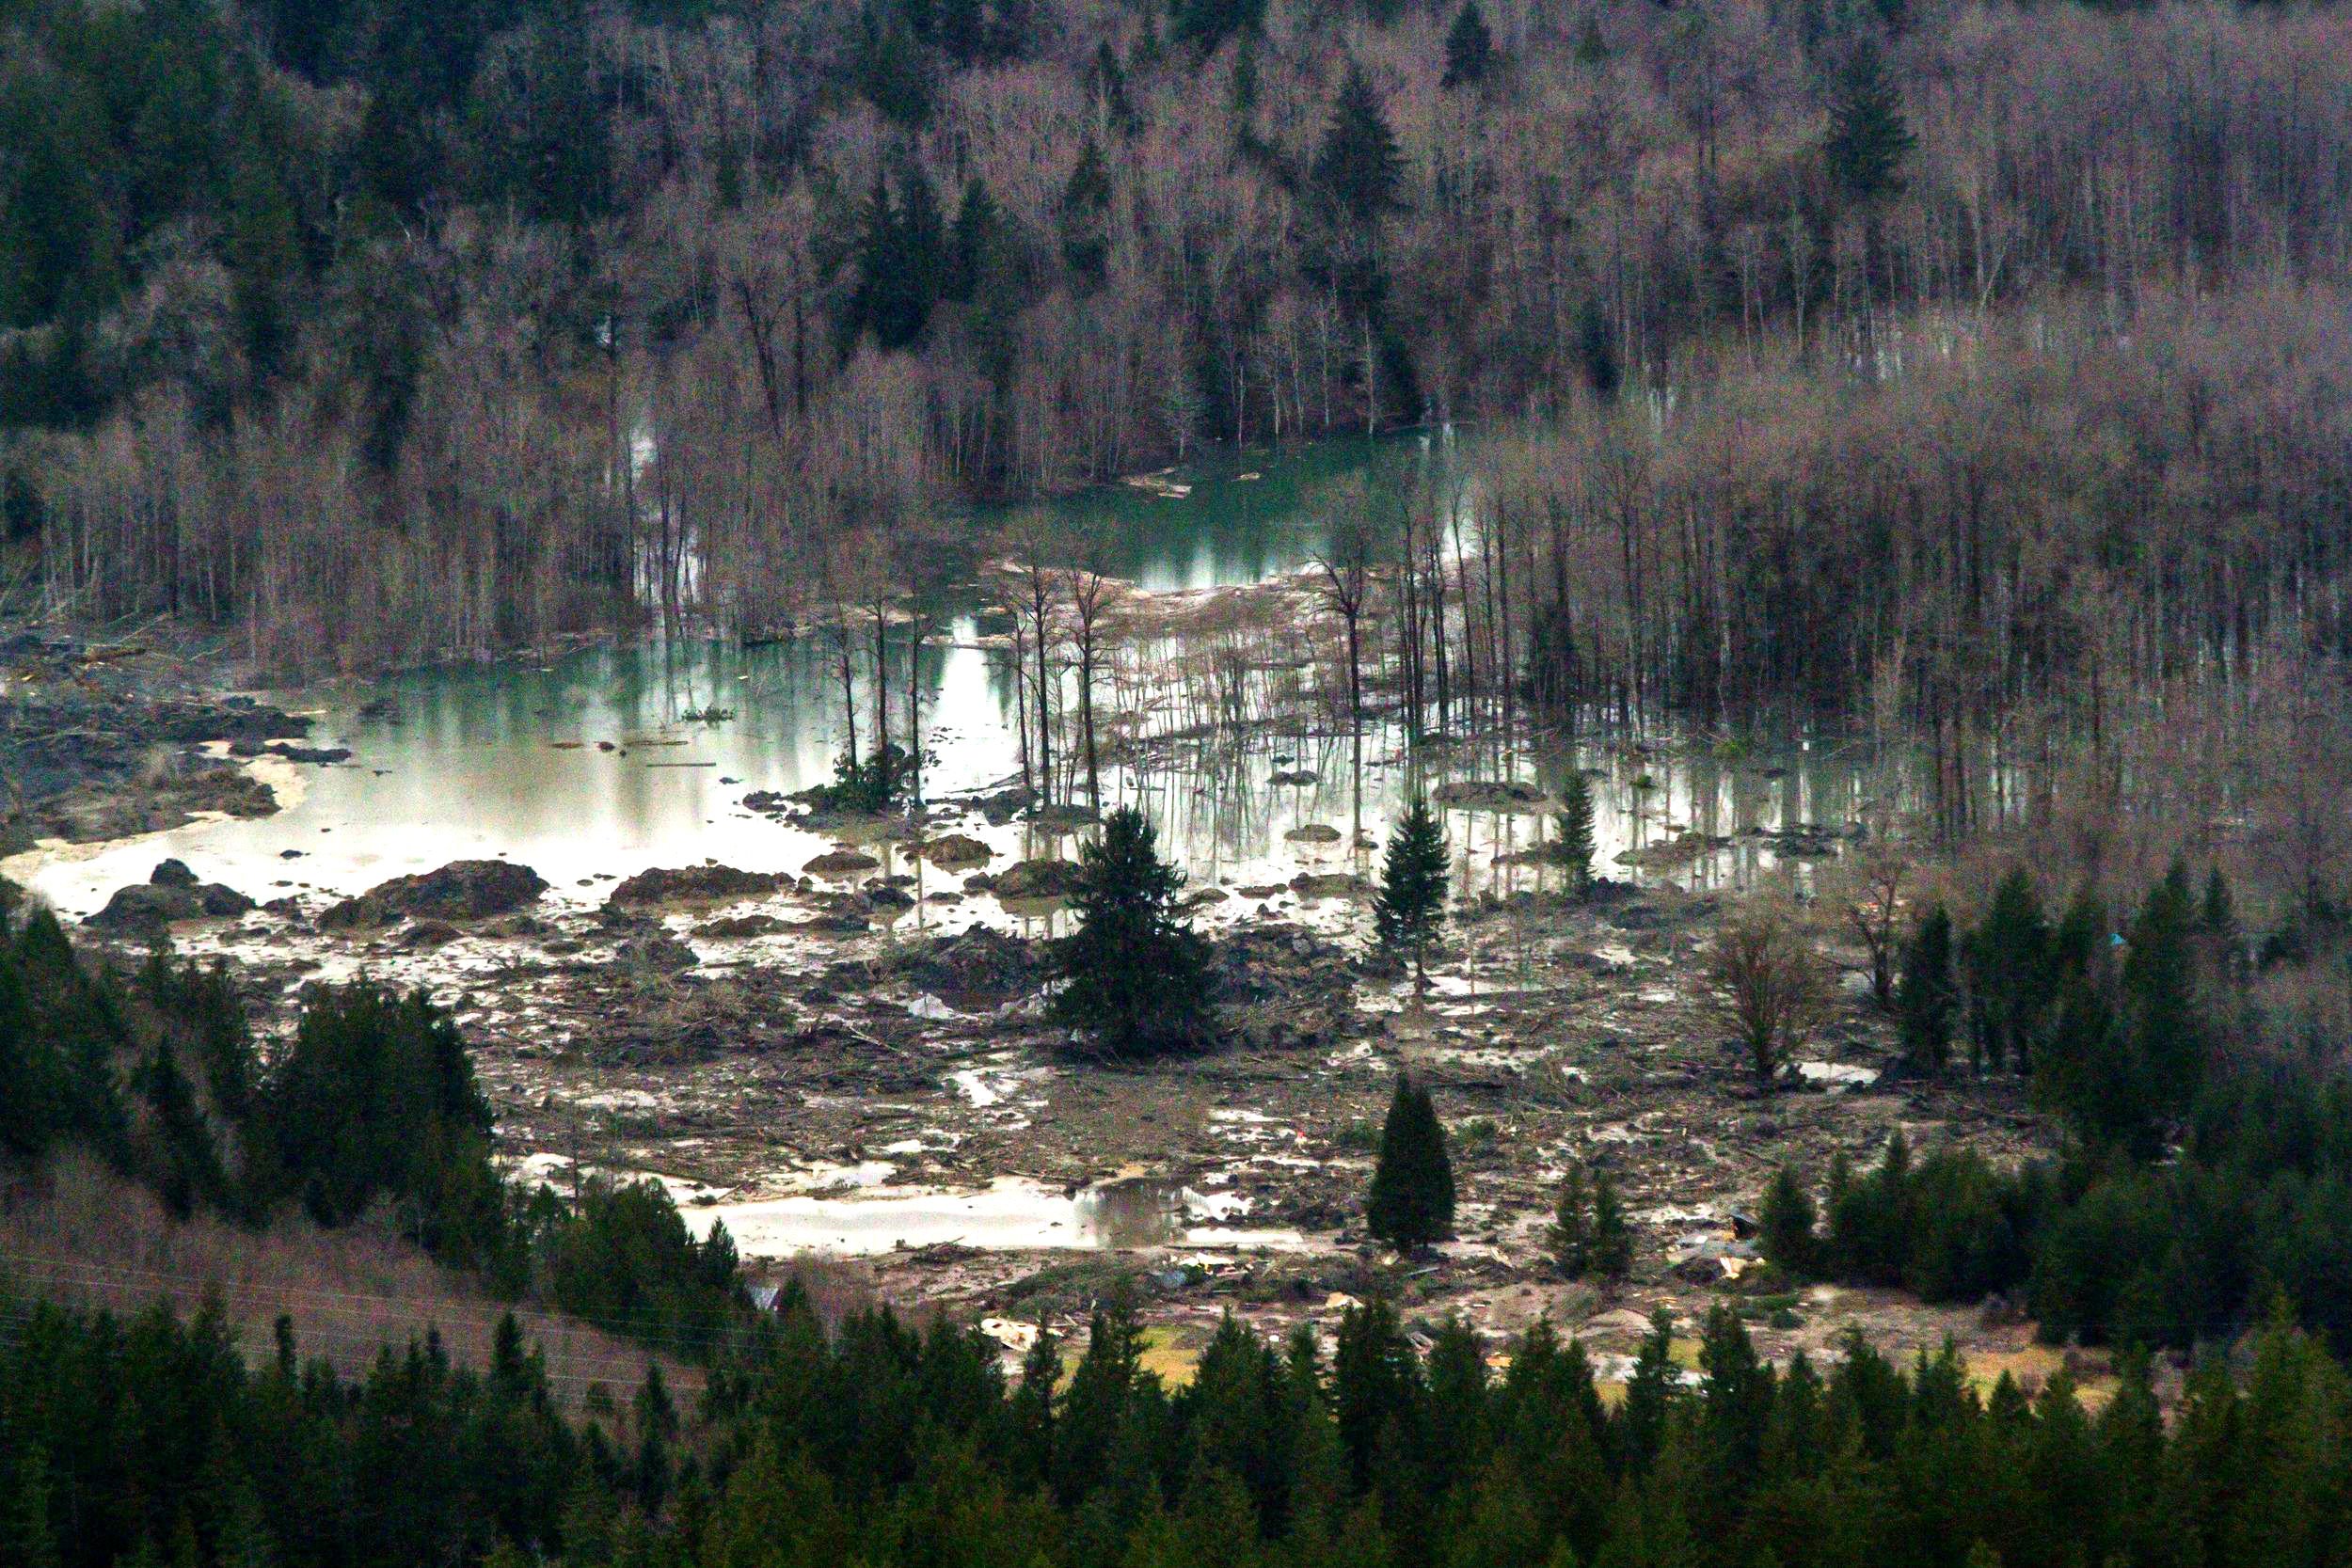 snohomish, Mudslide, Landslide, Nature, Natural, Disaster, Landscape, Forest, Washington, River, Gd Wallpaper